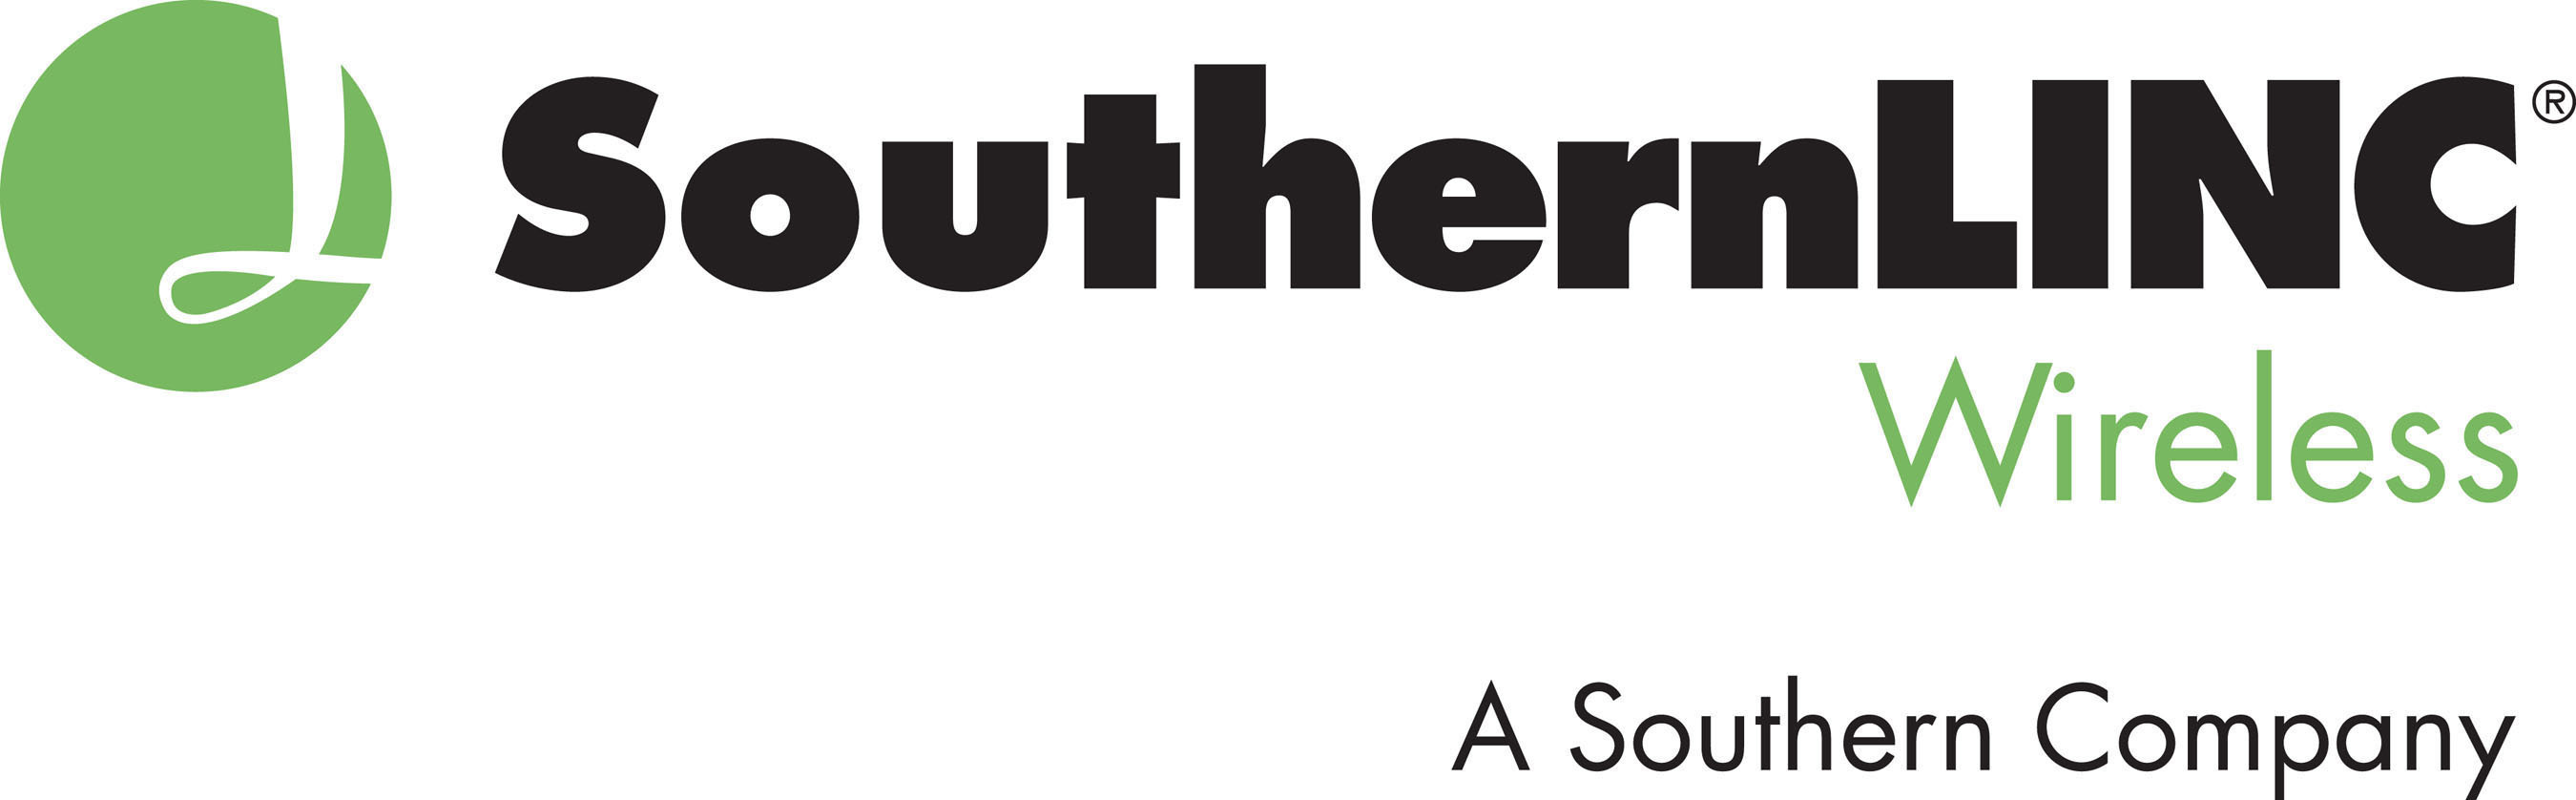 SouthernLINC Wireless logo. (PRNewsFoto/SouthernLINC Wireless) (PRNewsFoto/)